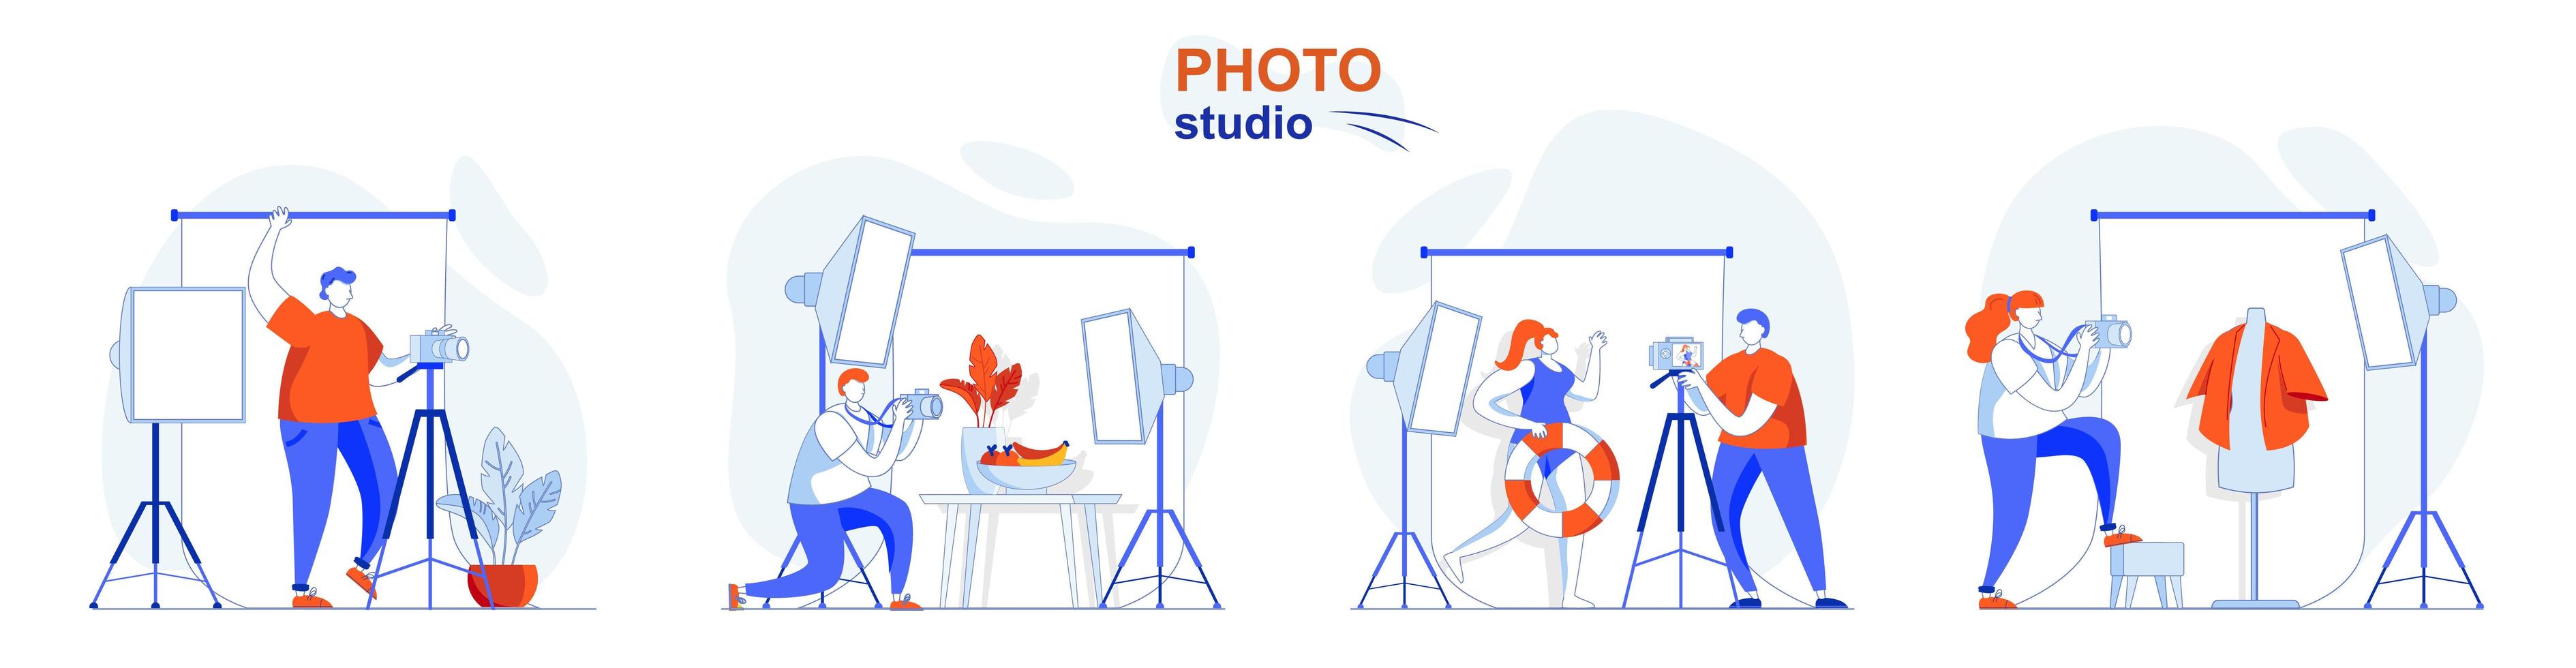 concept de studio photo défini des scènes isolées dans un design plat vecteur